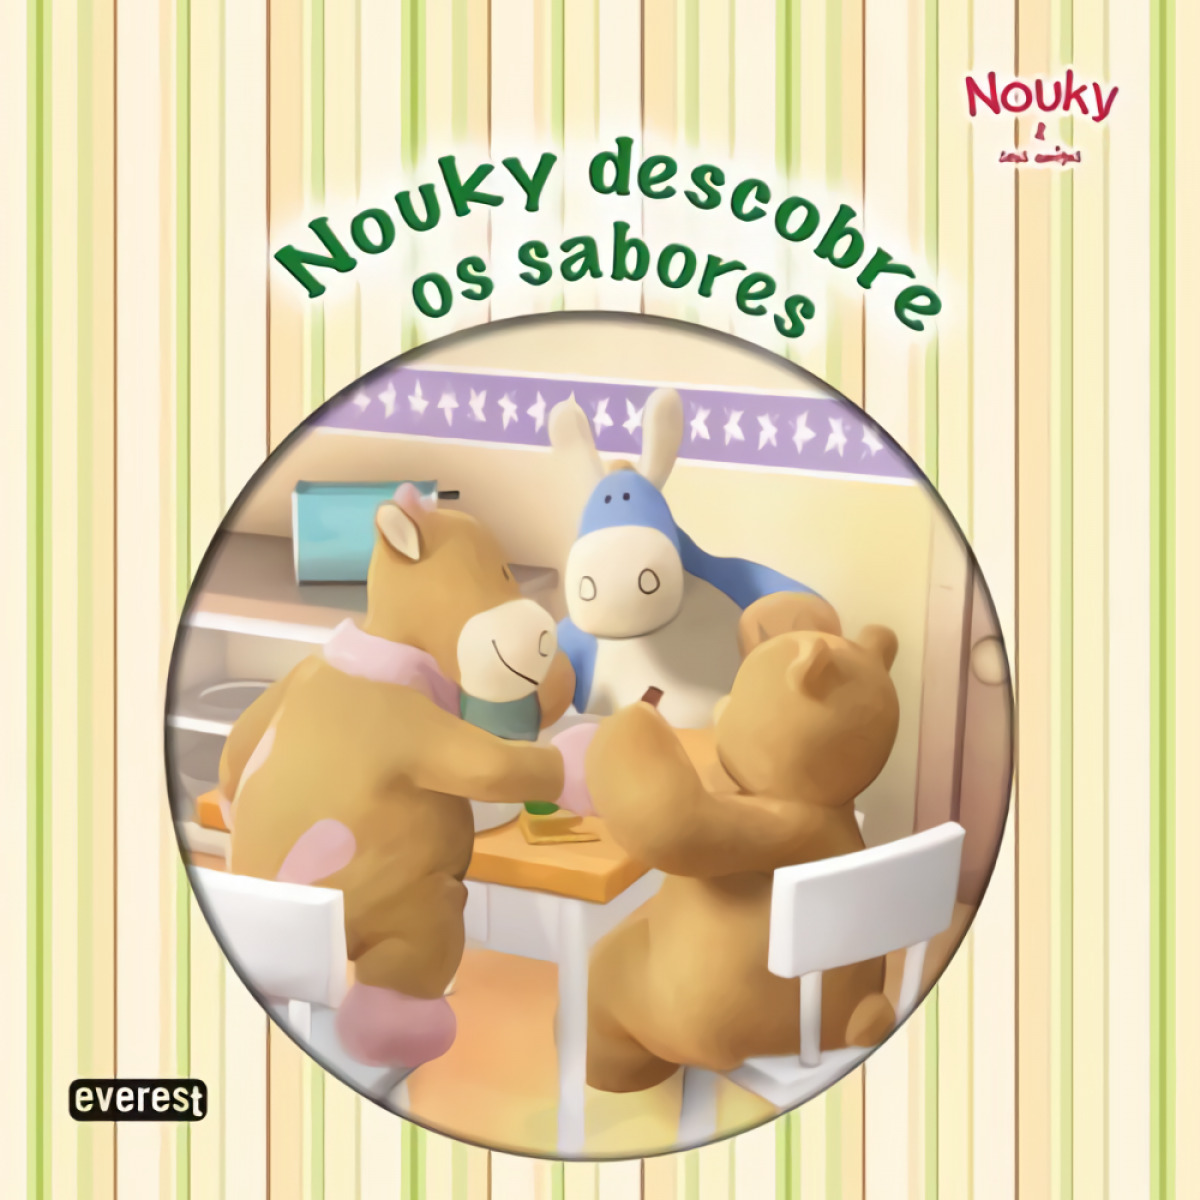 Nouky & seus amigos: nouky descobre os sabores - Vv.Aa.